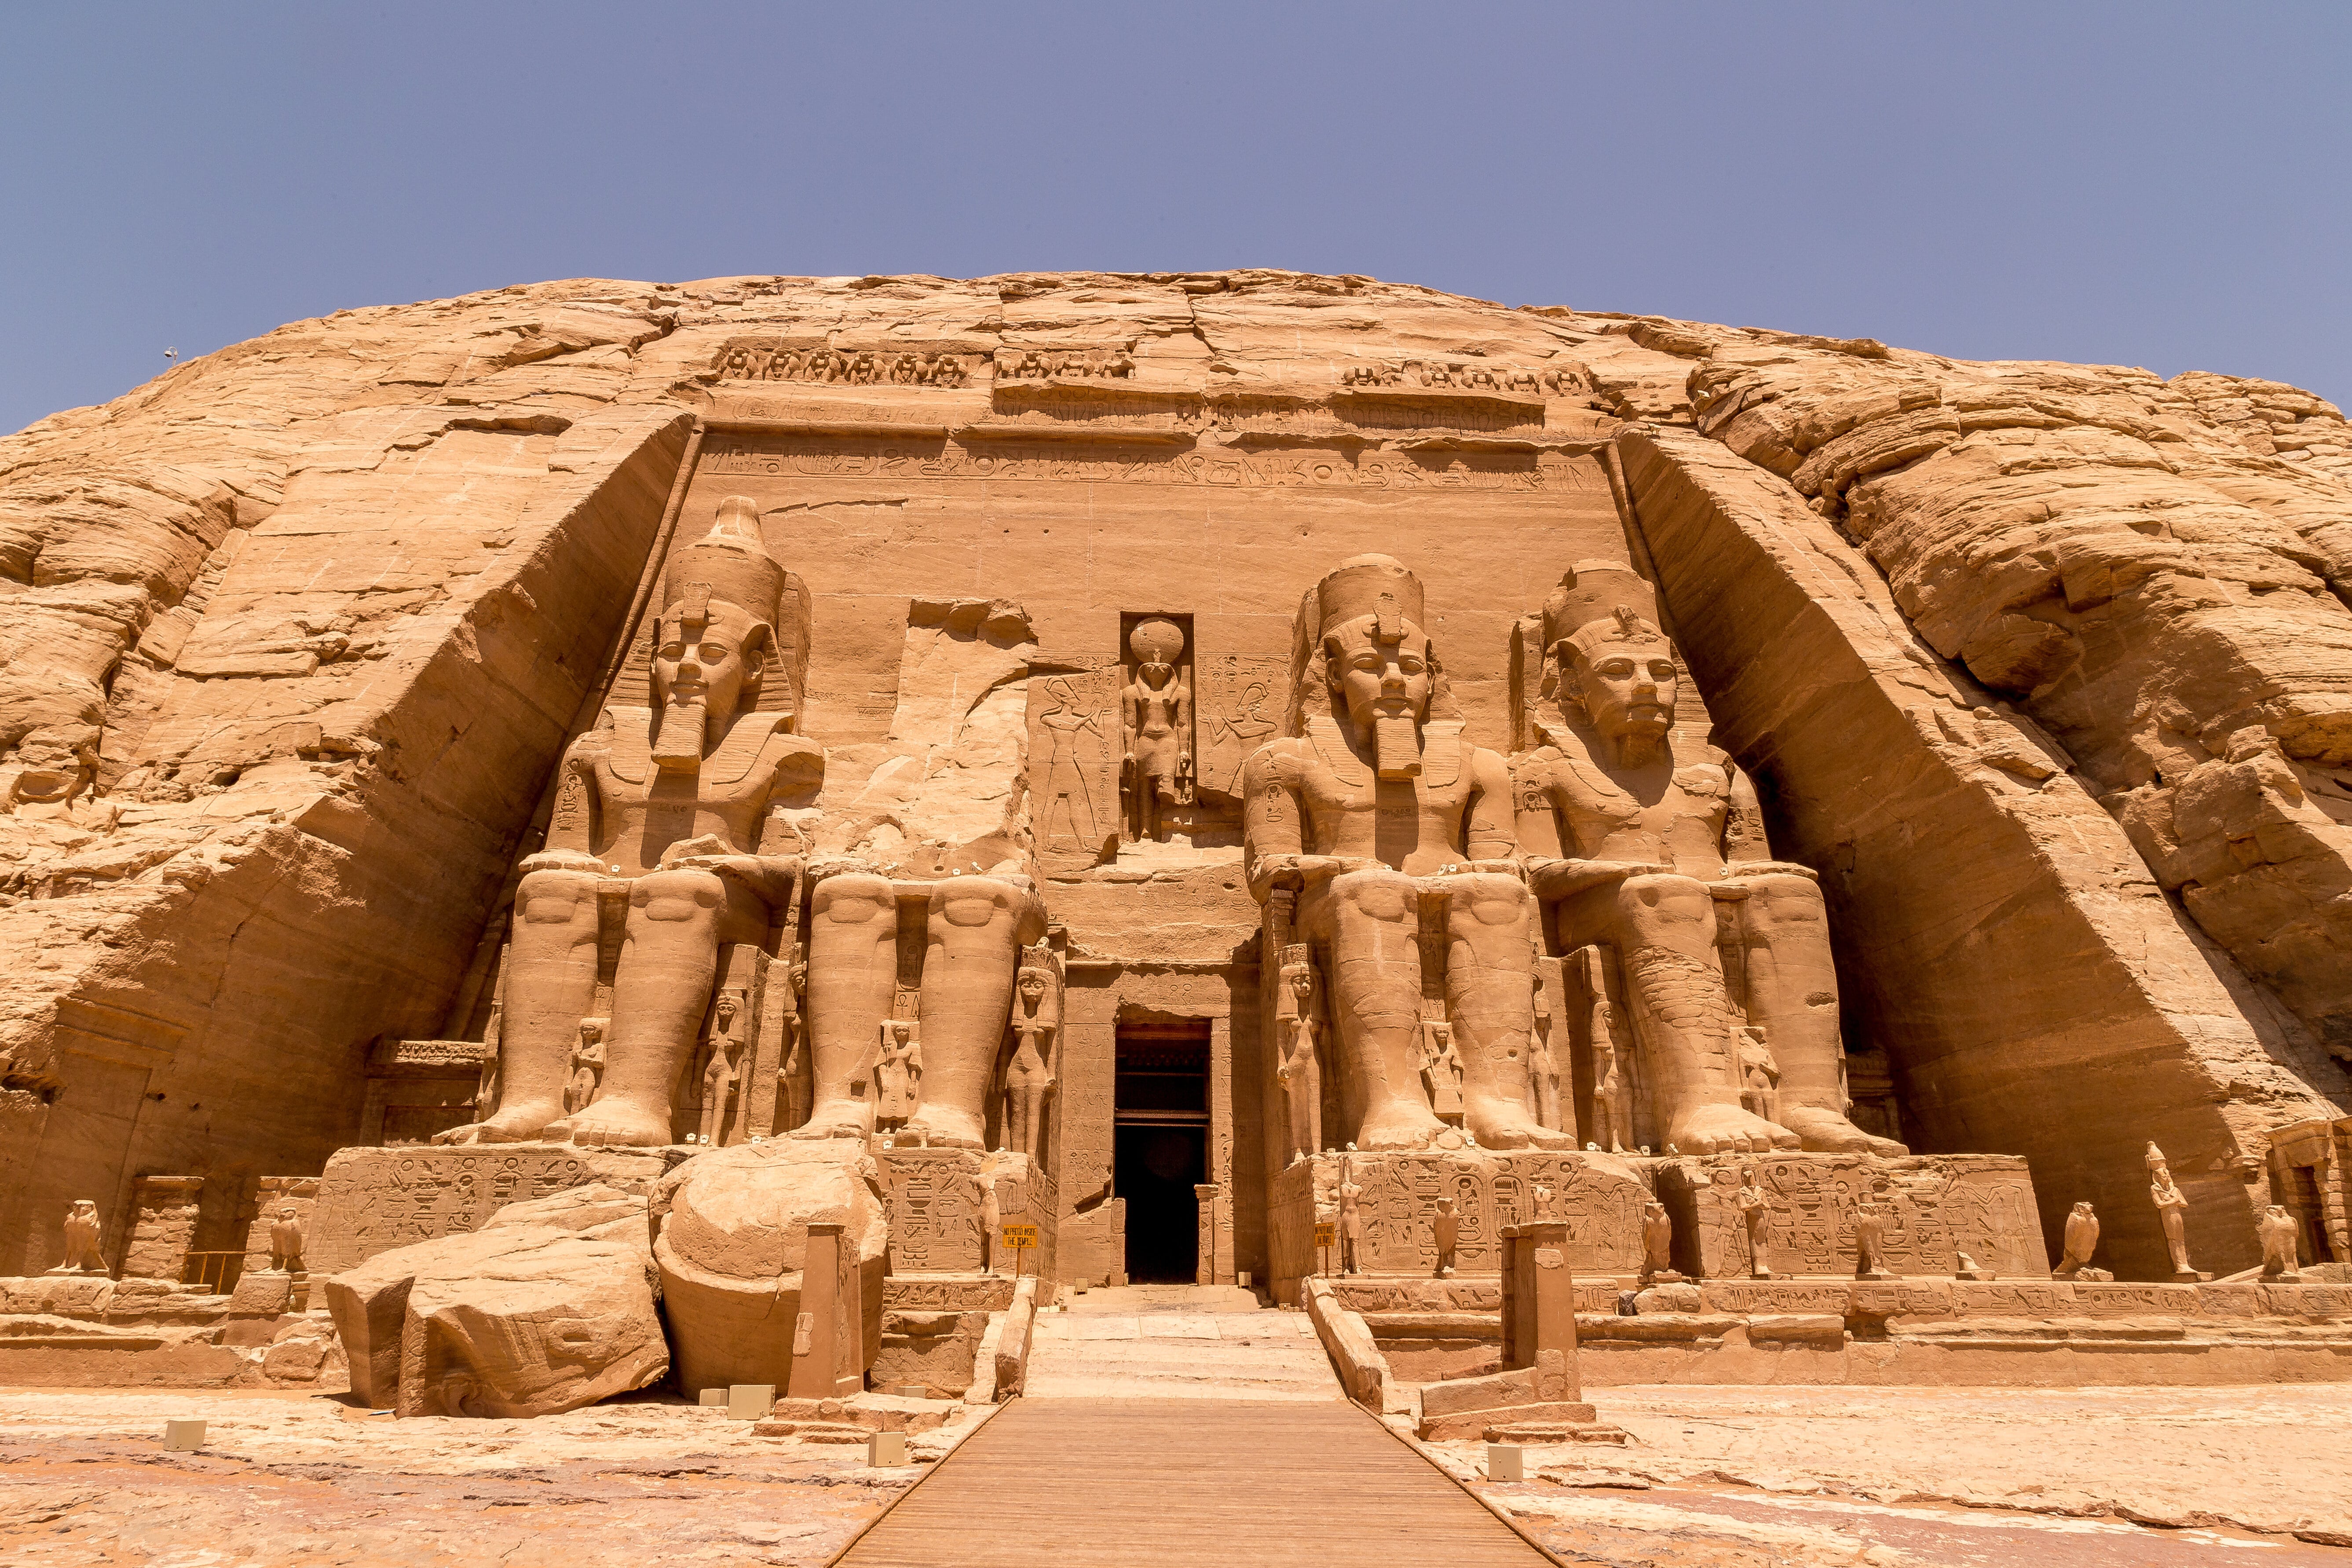 Le temple Abou Simbel, situé en Égypte est dédié au culte des divinités Amon, Rê, et Ptah et du pharaon Ramsès II. Les statues de la façade représentent ce dernier. © matiplanas, Adobe Stock